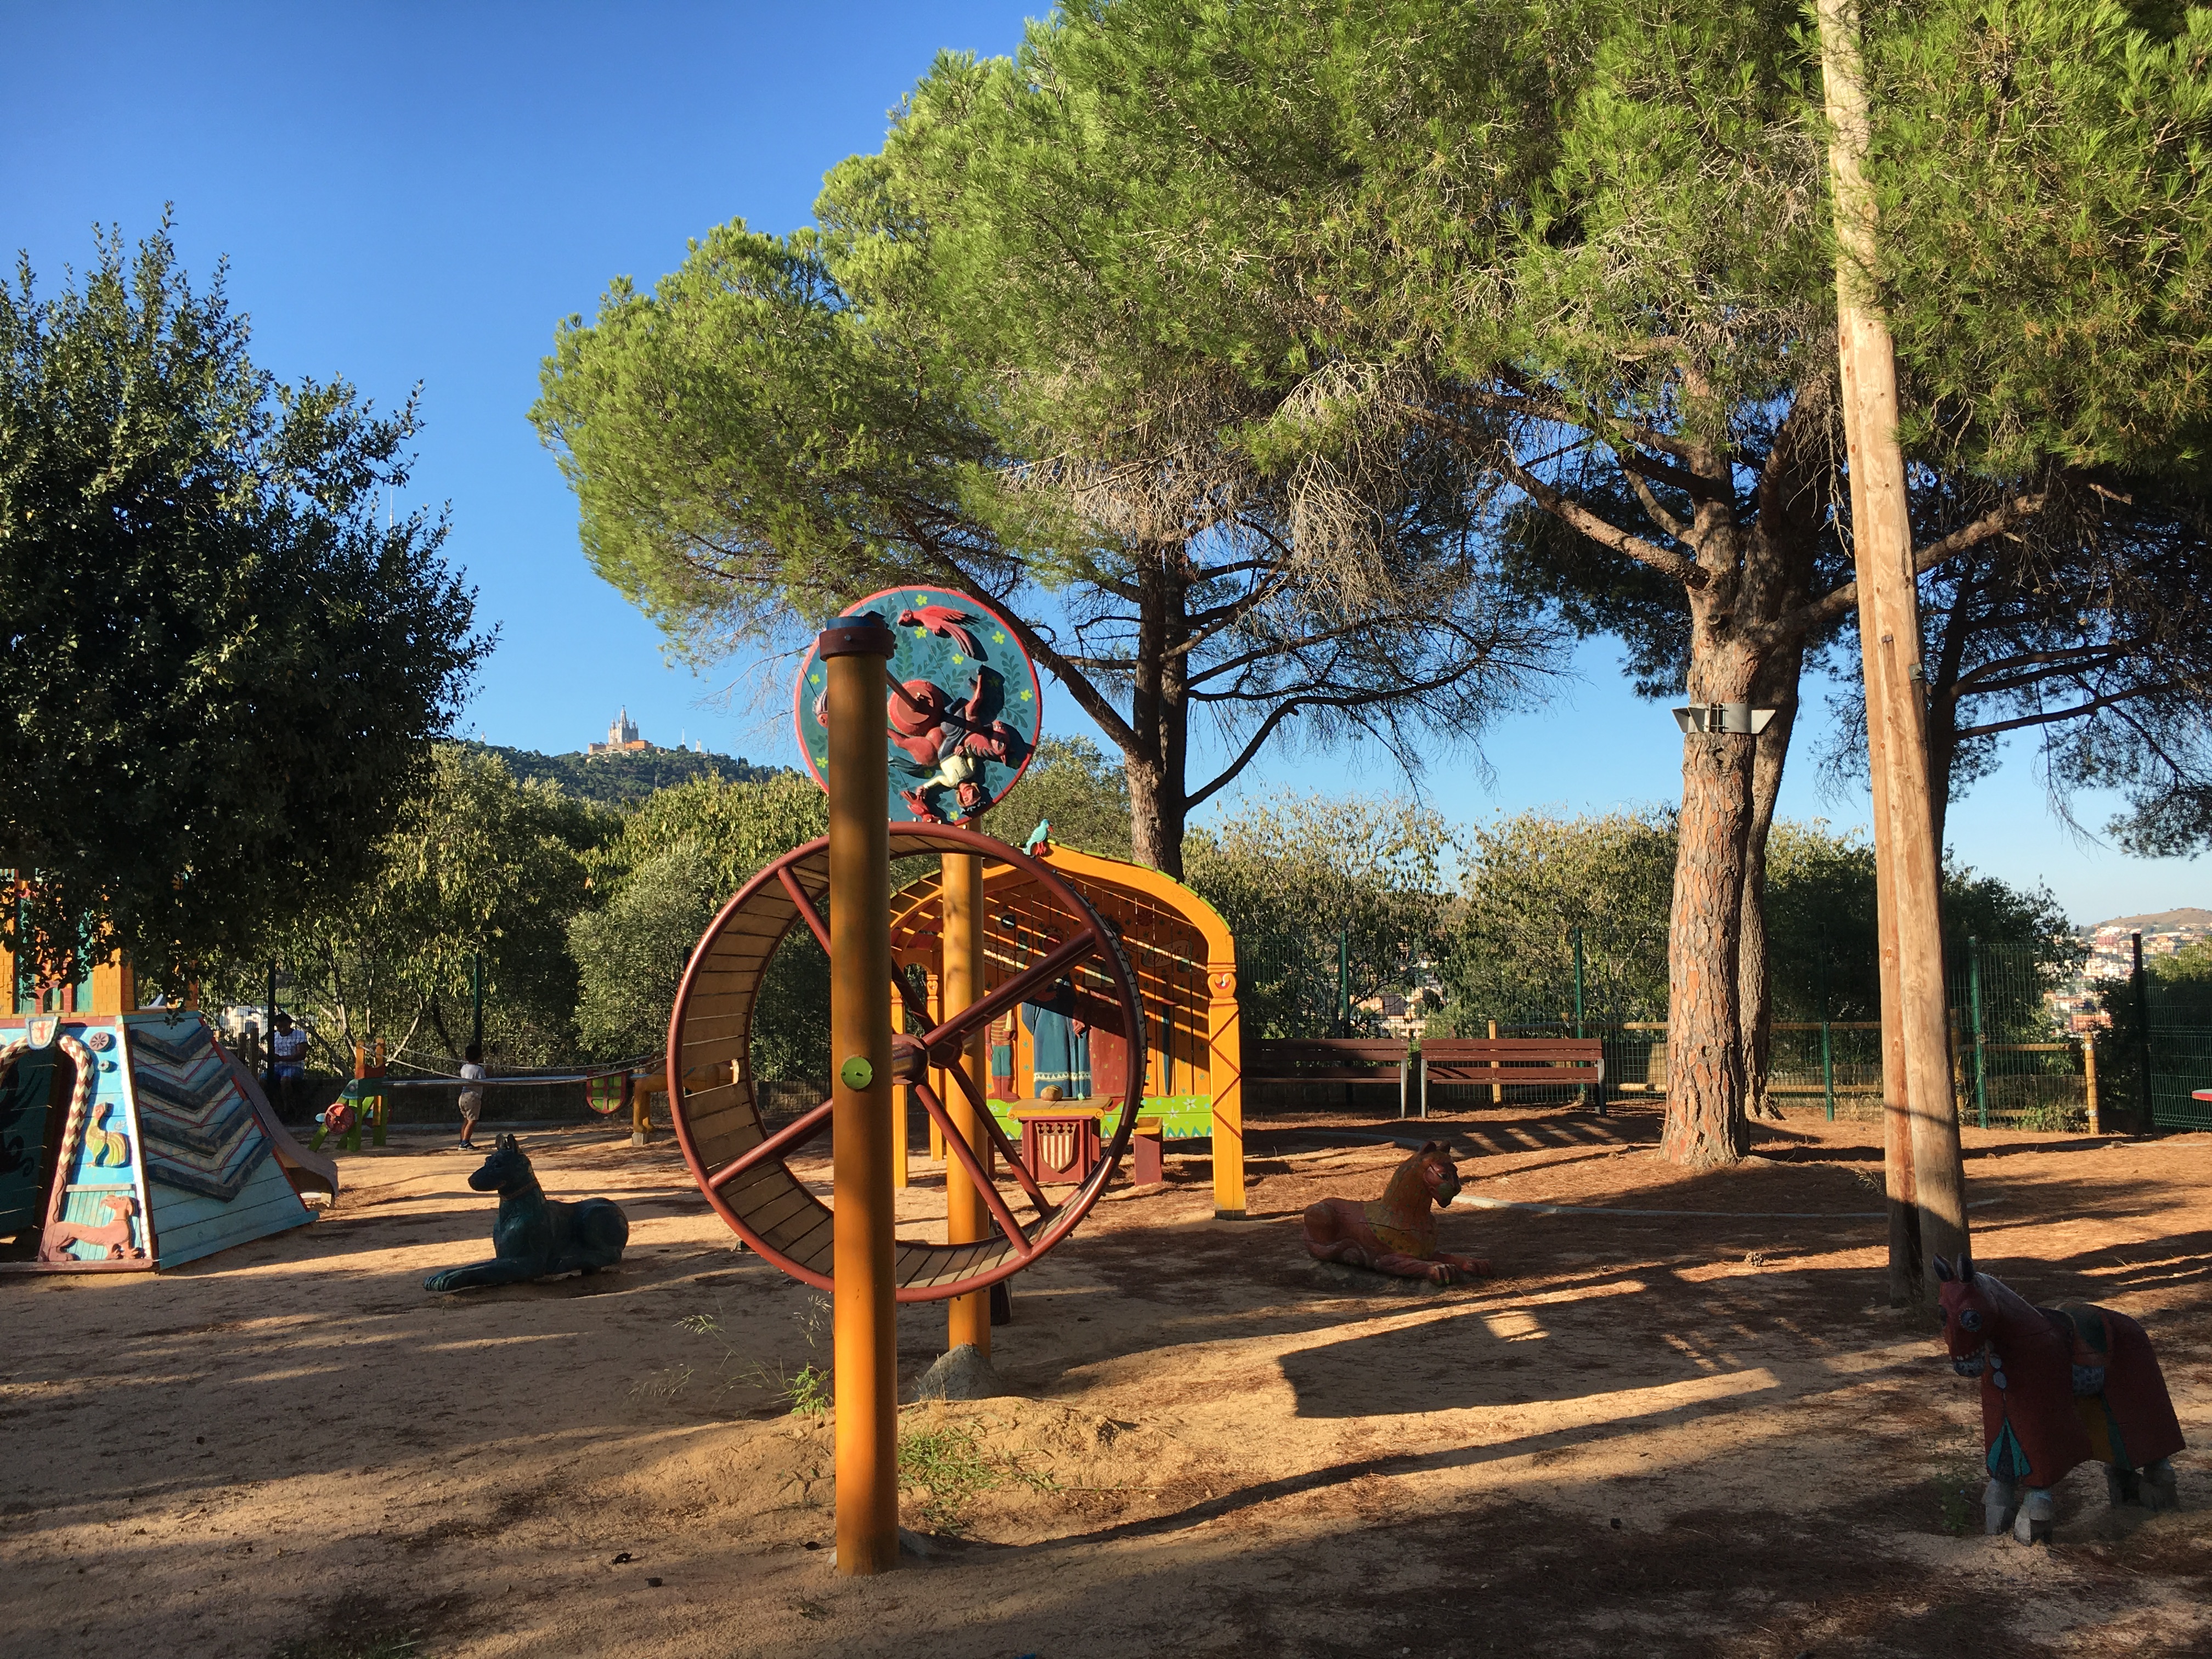 Une aire de jeux ou une forêt à Barcelone? Le parc du Castell de l’Oreneta